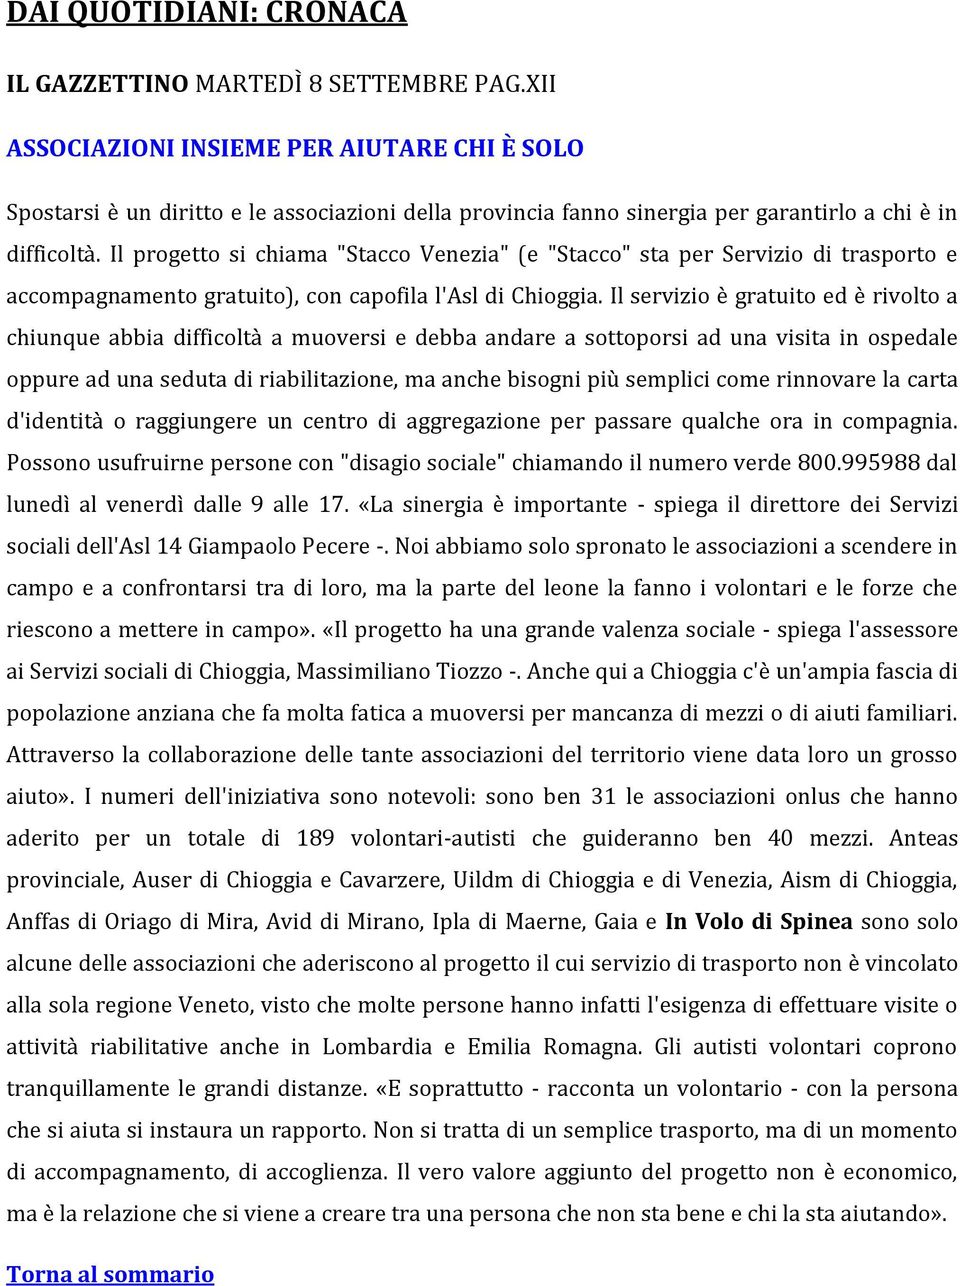 Il progetto si chiama "Stacco Venezia" (e "Stacco" sta per Servizio di trasporto e accompagnamento gratuito), con capofila l'asl di Chioggia.